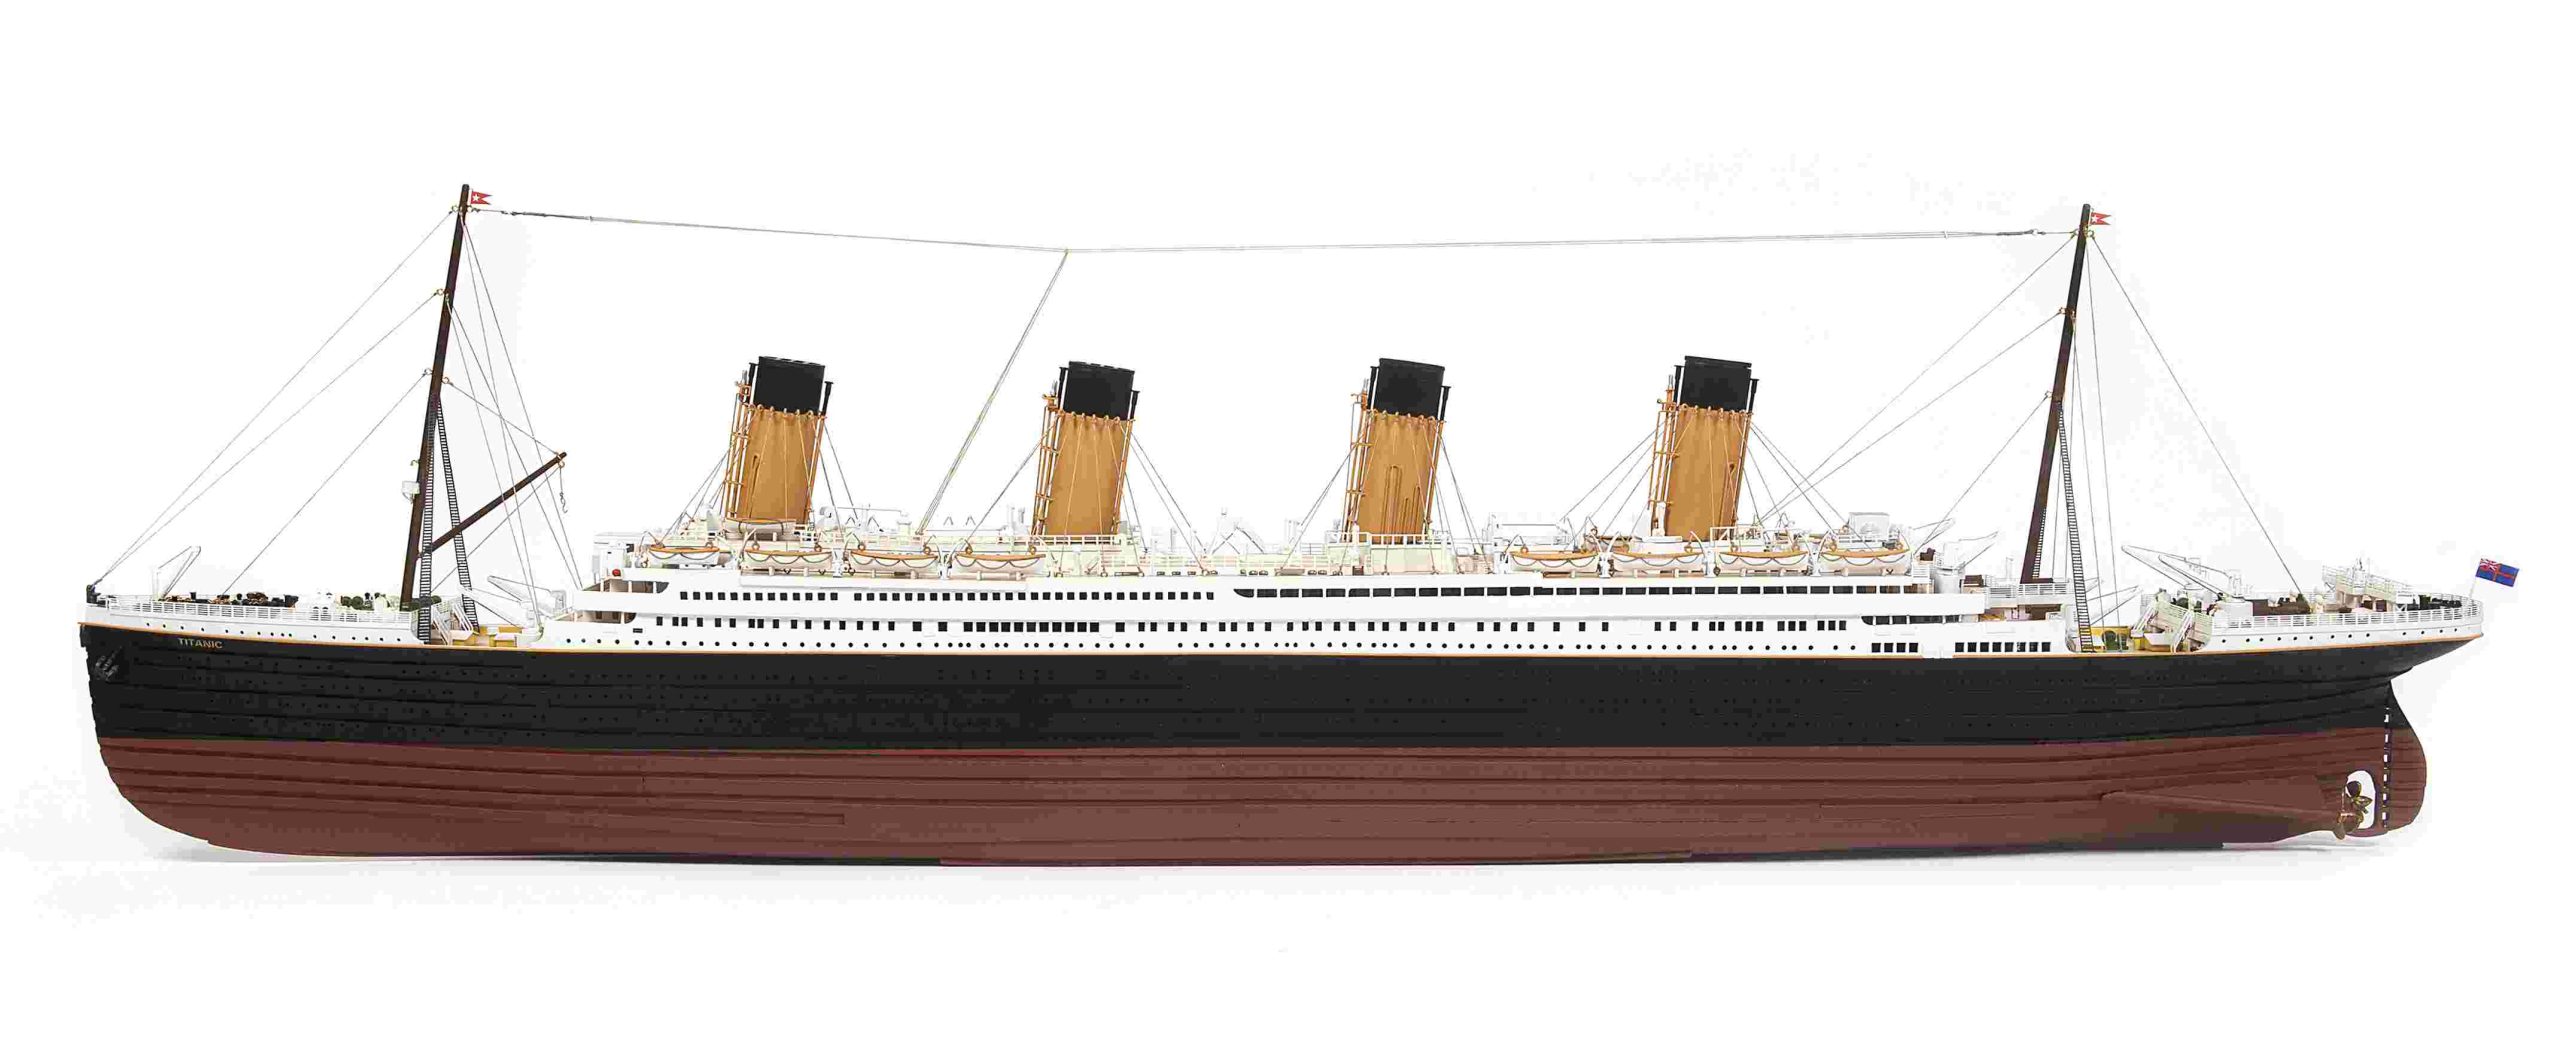 Titanic Model Ship Kit - Occre (14009)